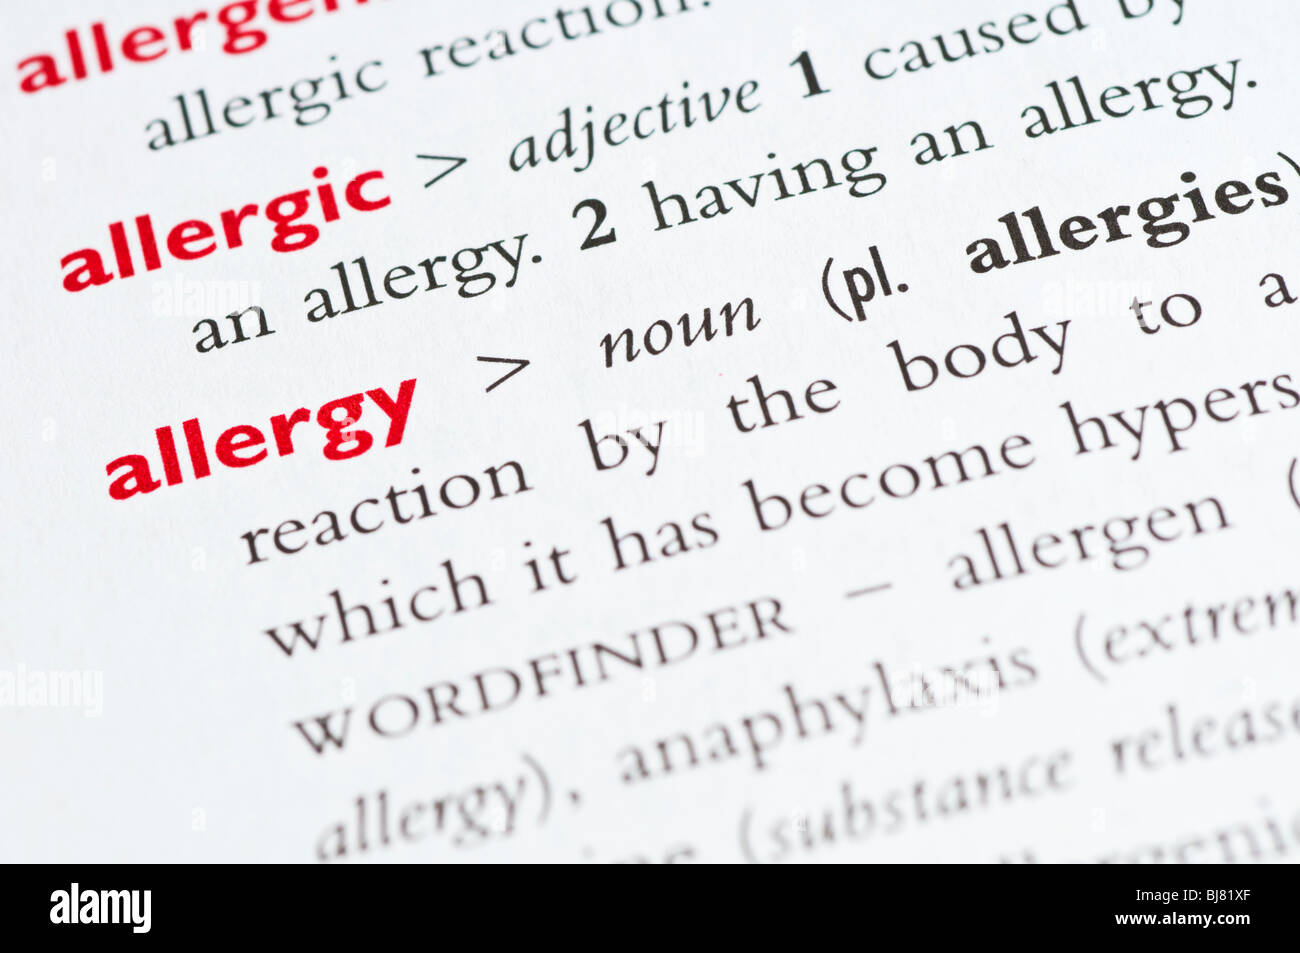 Wörterbuch-Definition des Wortes "Allergie" Stockfoto